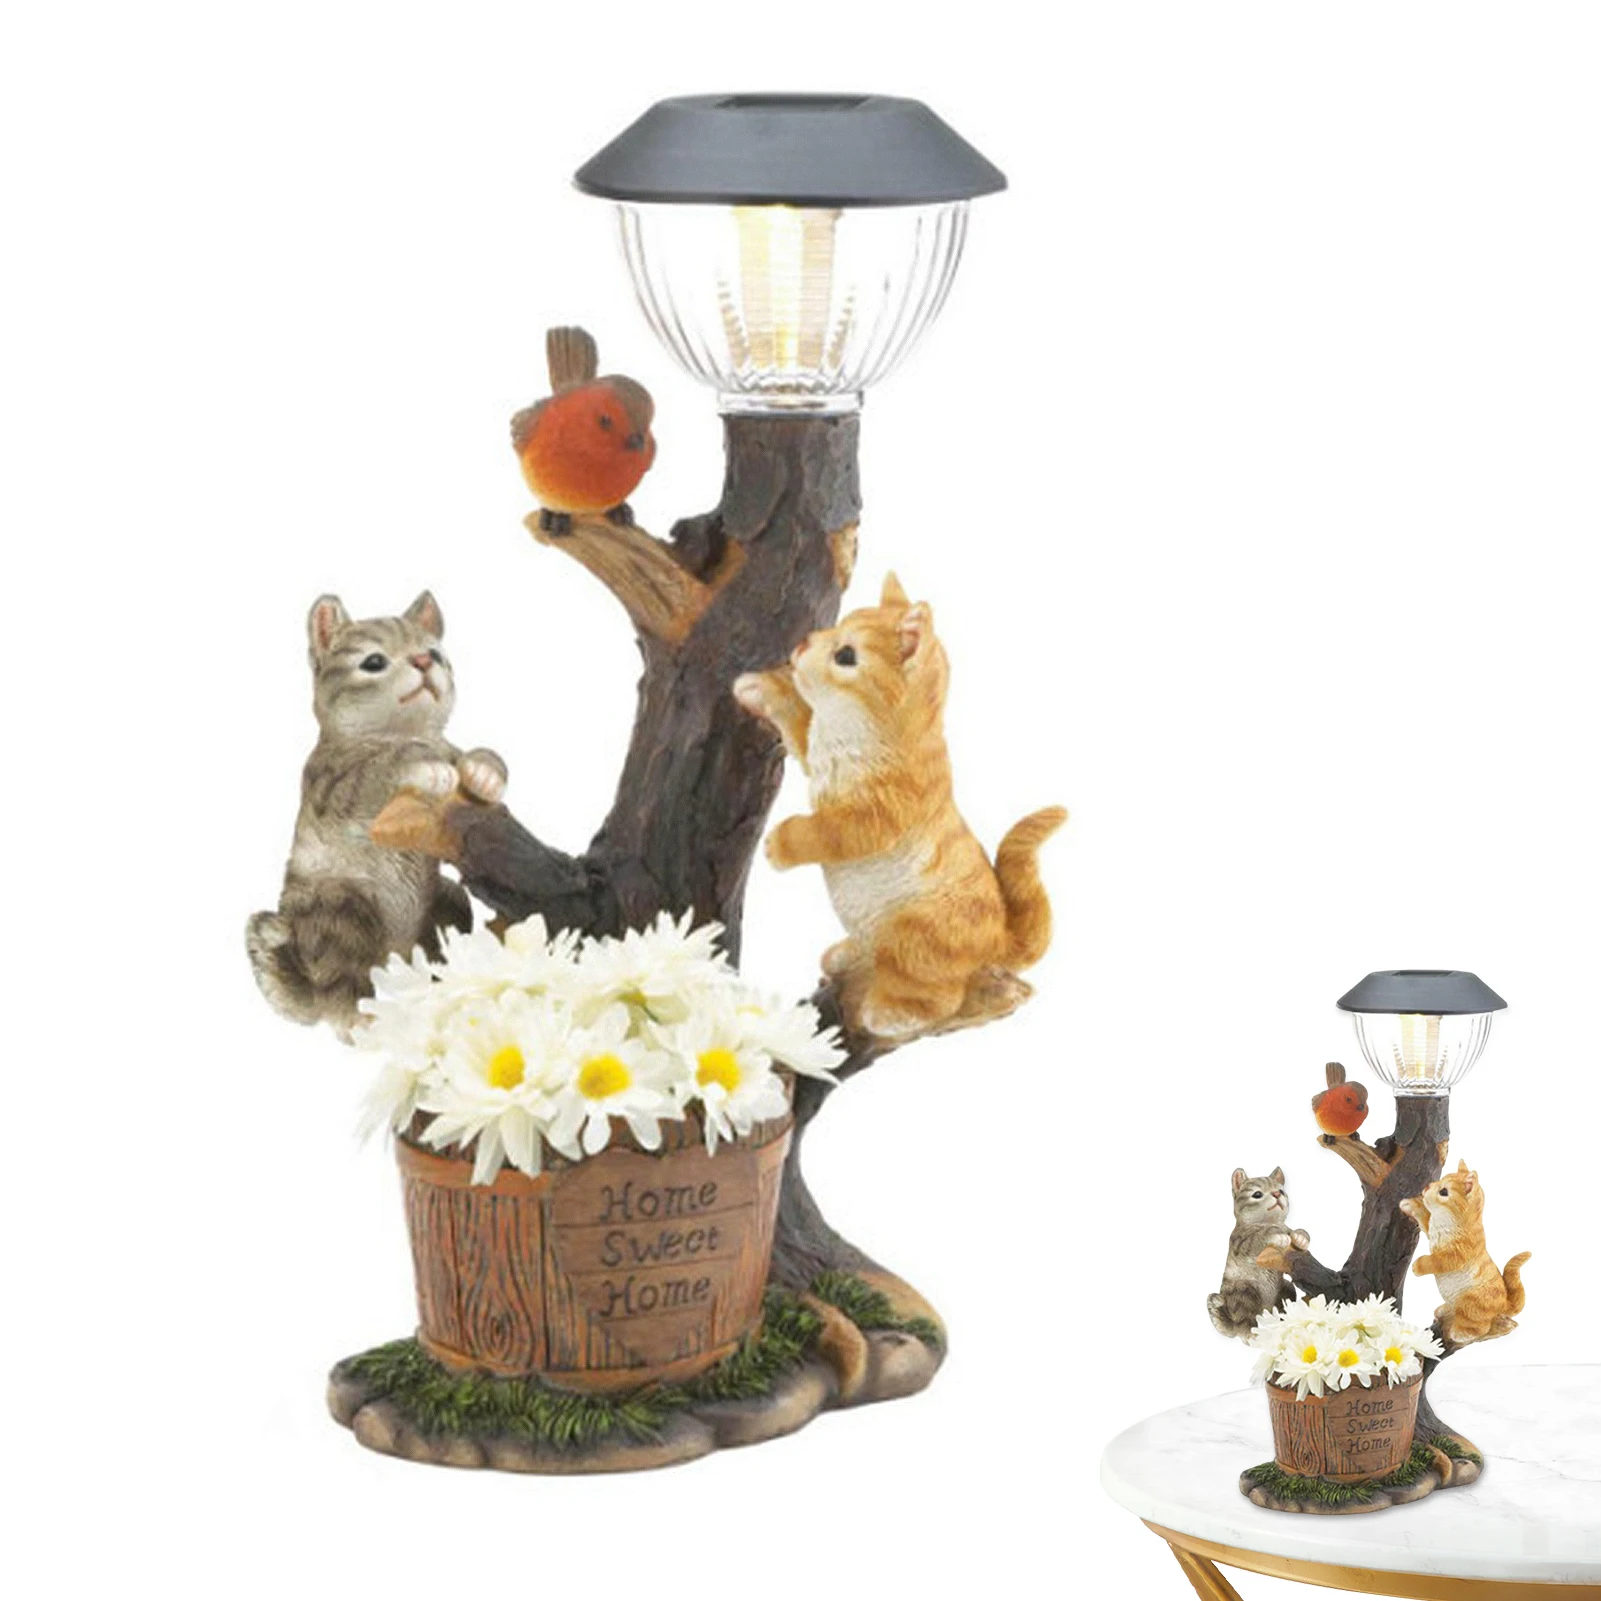 

Фигурка патио, подарок, статуя из смолы для заднего двора, садовая лампа с теплым белым светом, искусственный фонарь, декоративная лужайка, пруд, милое животное